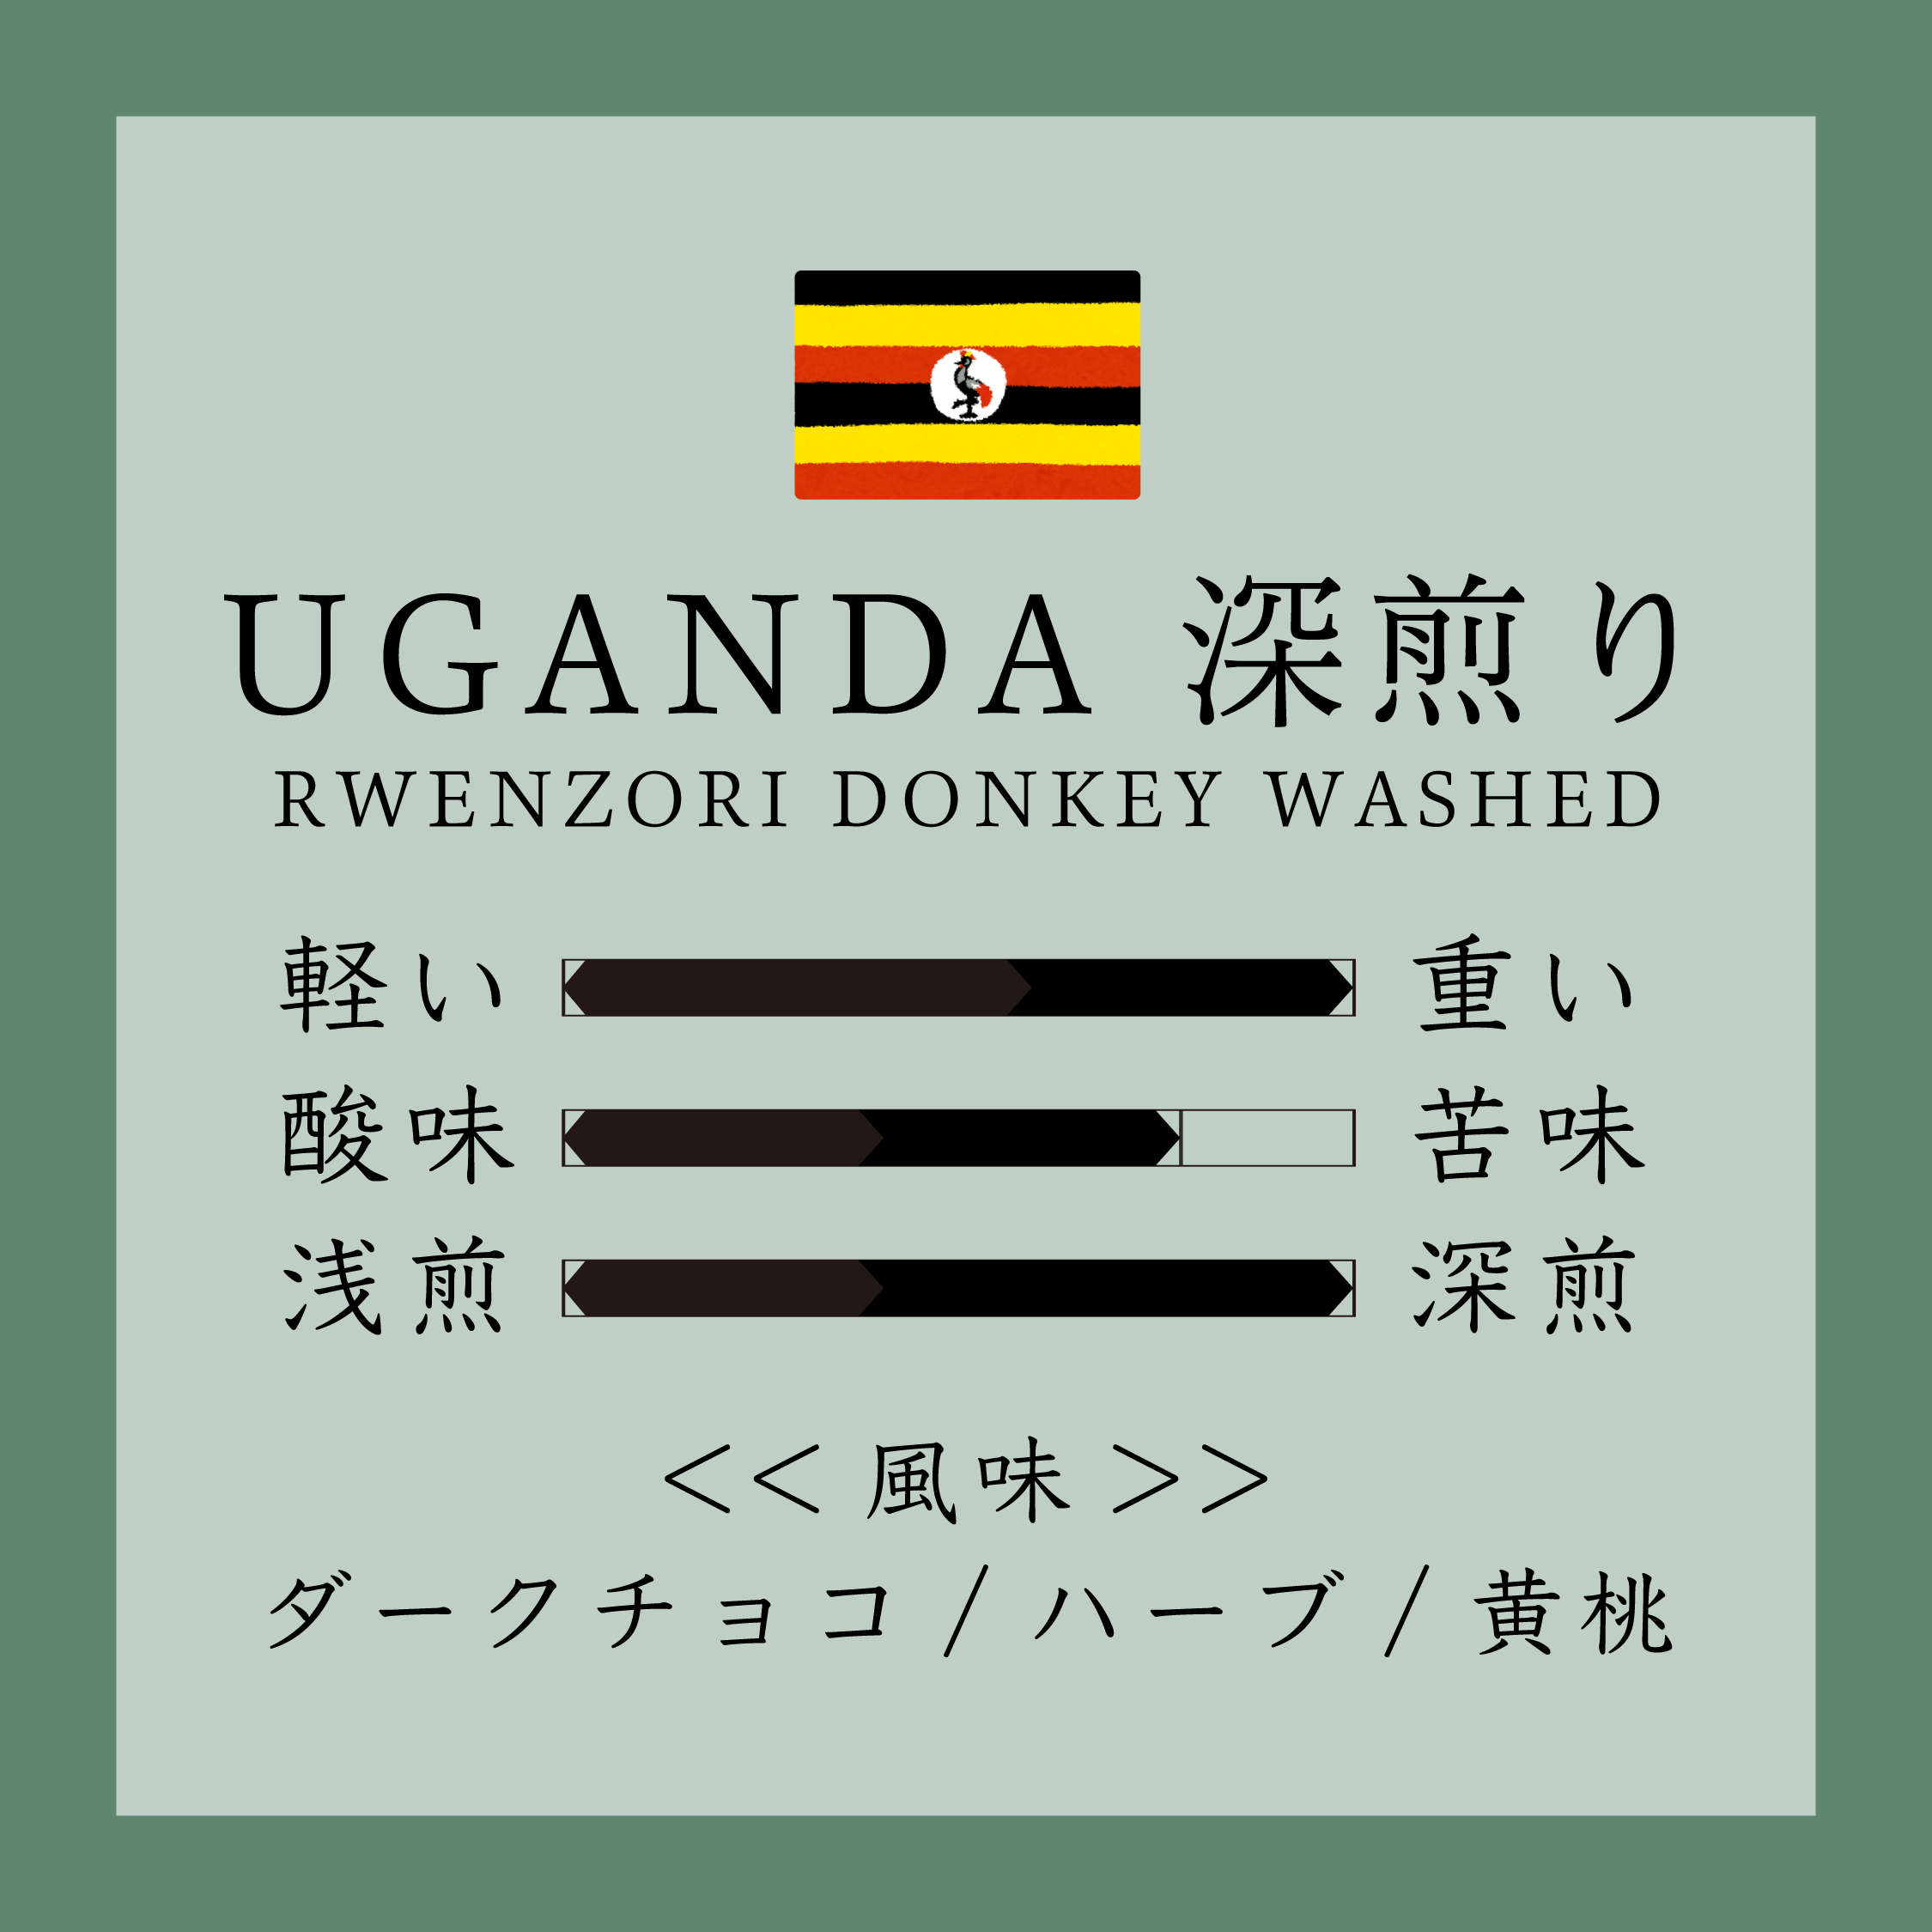 Uganda Rwenzori Donkey Washed 深煎り 150g